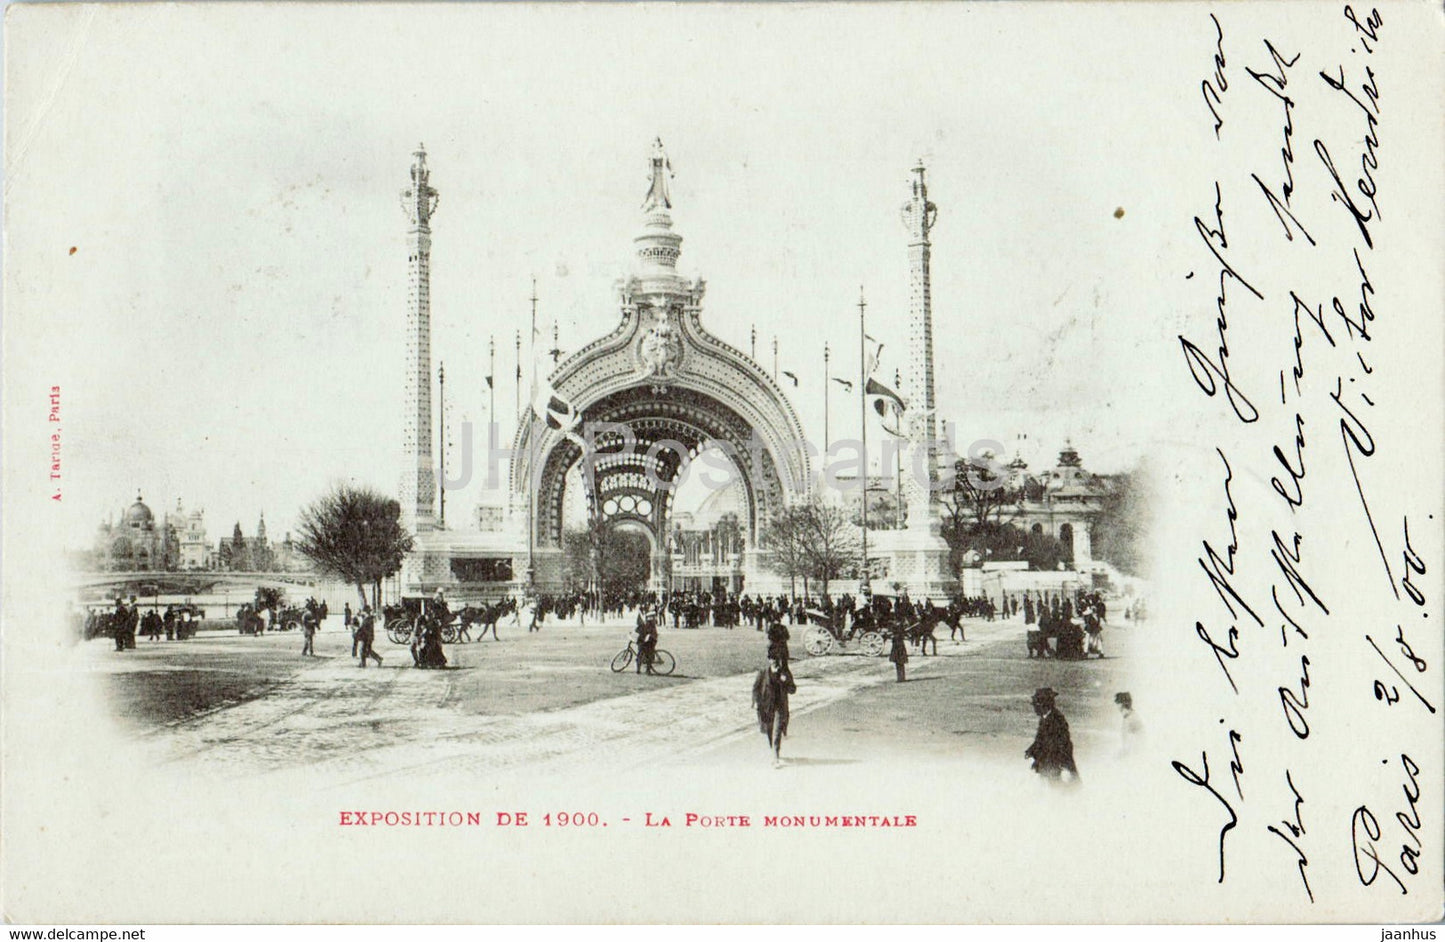 Paris - Exposition de 1900  - La Porte Monumentale - old postcard - 1900 - France - used - JH Postcards